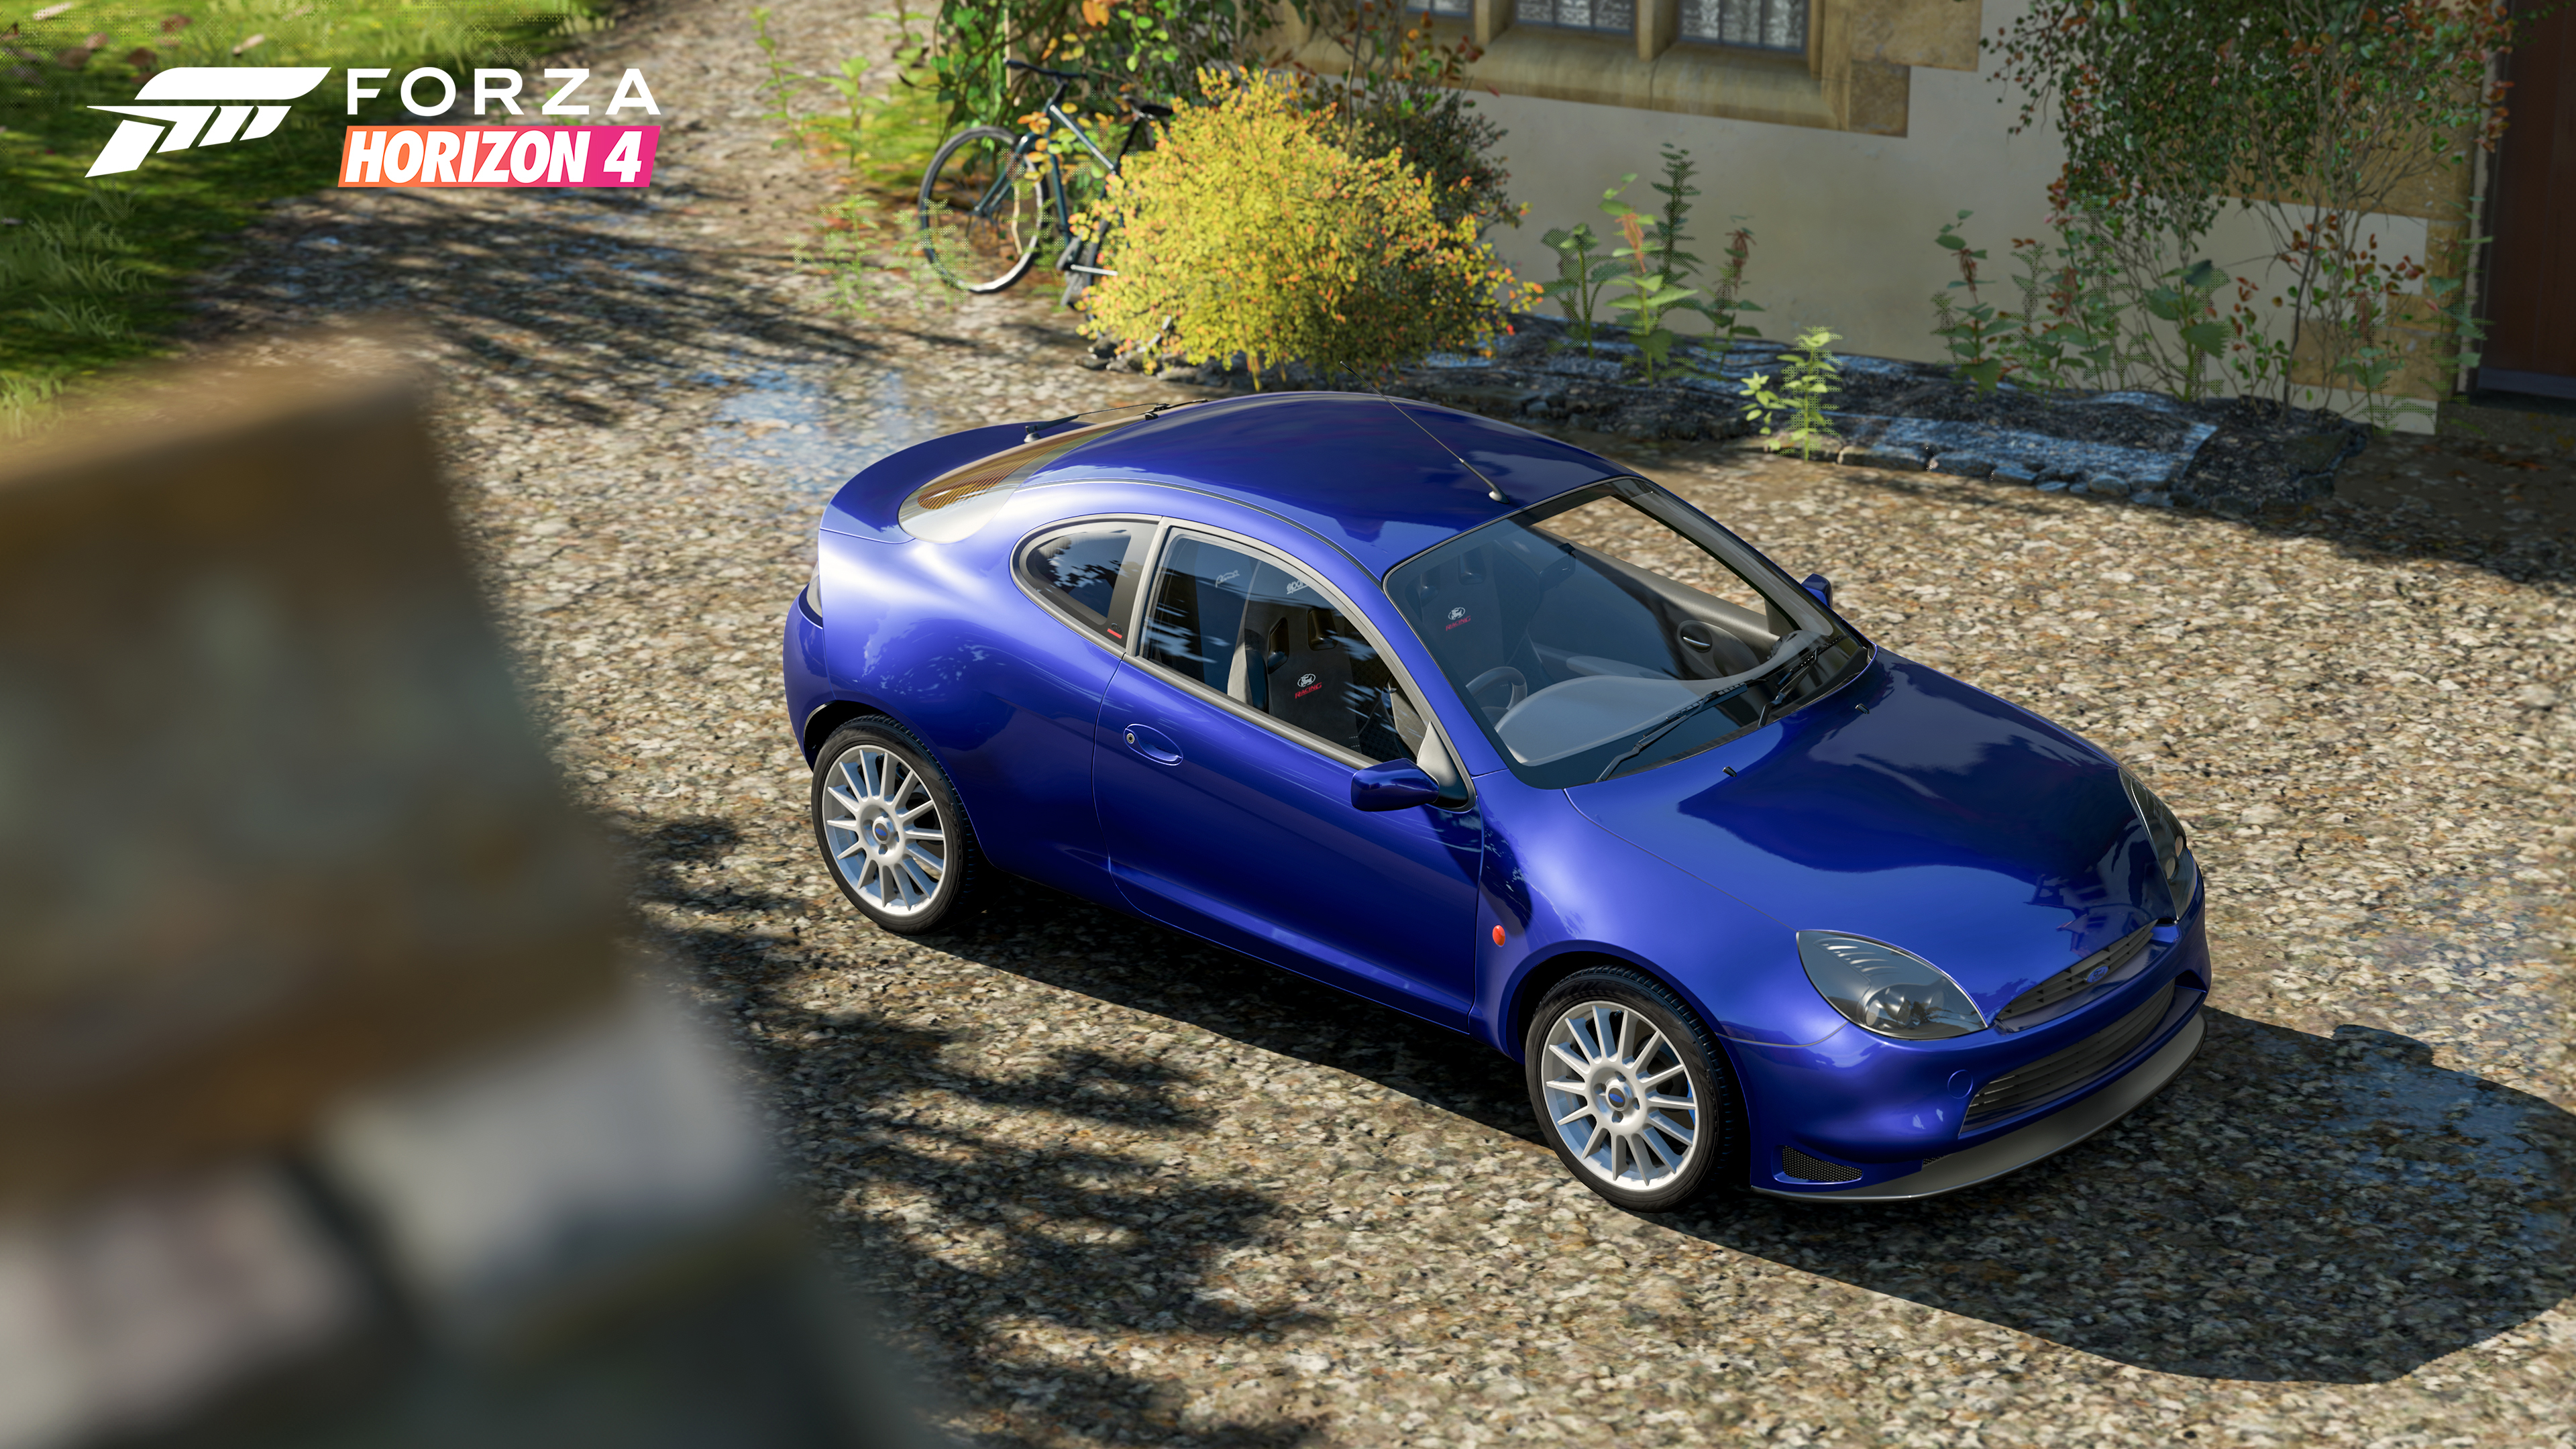 Forza Horizon 5 2009 Pagani Zonda Cinque Roadster RARE Steam